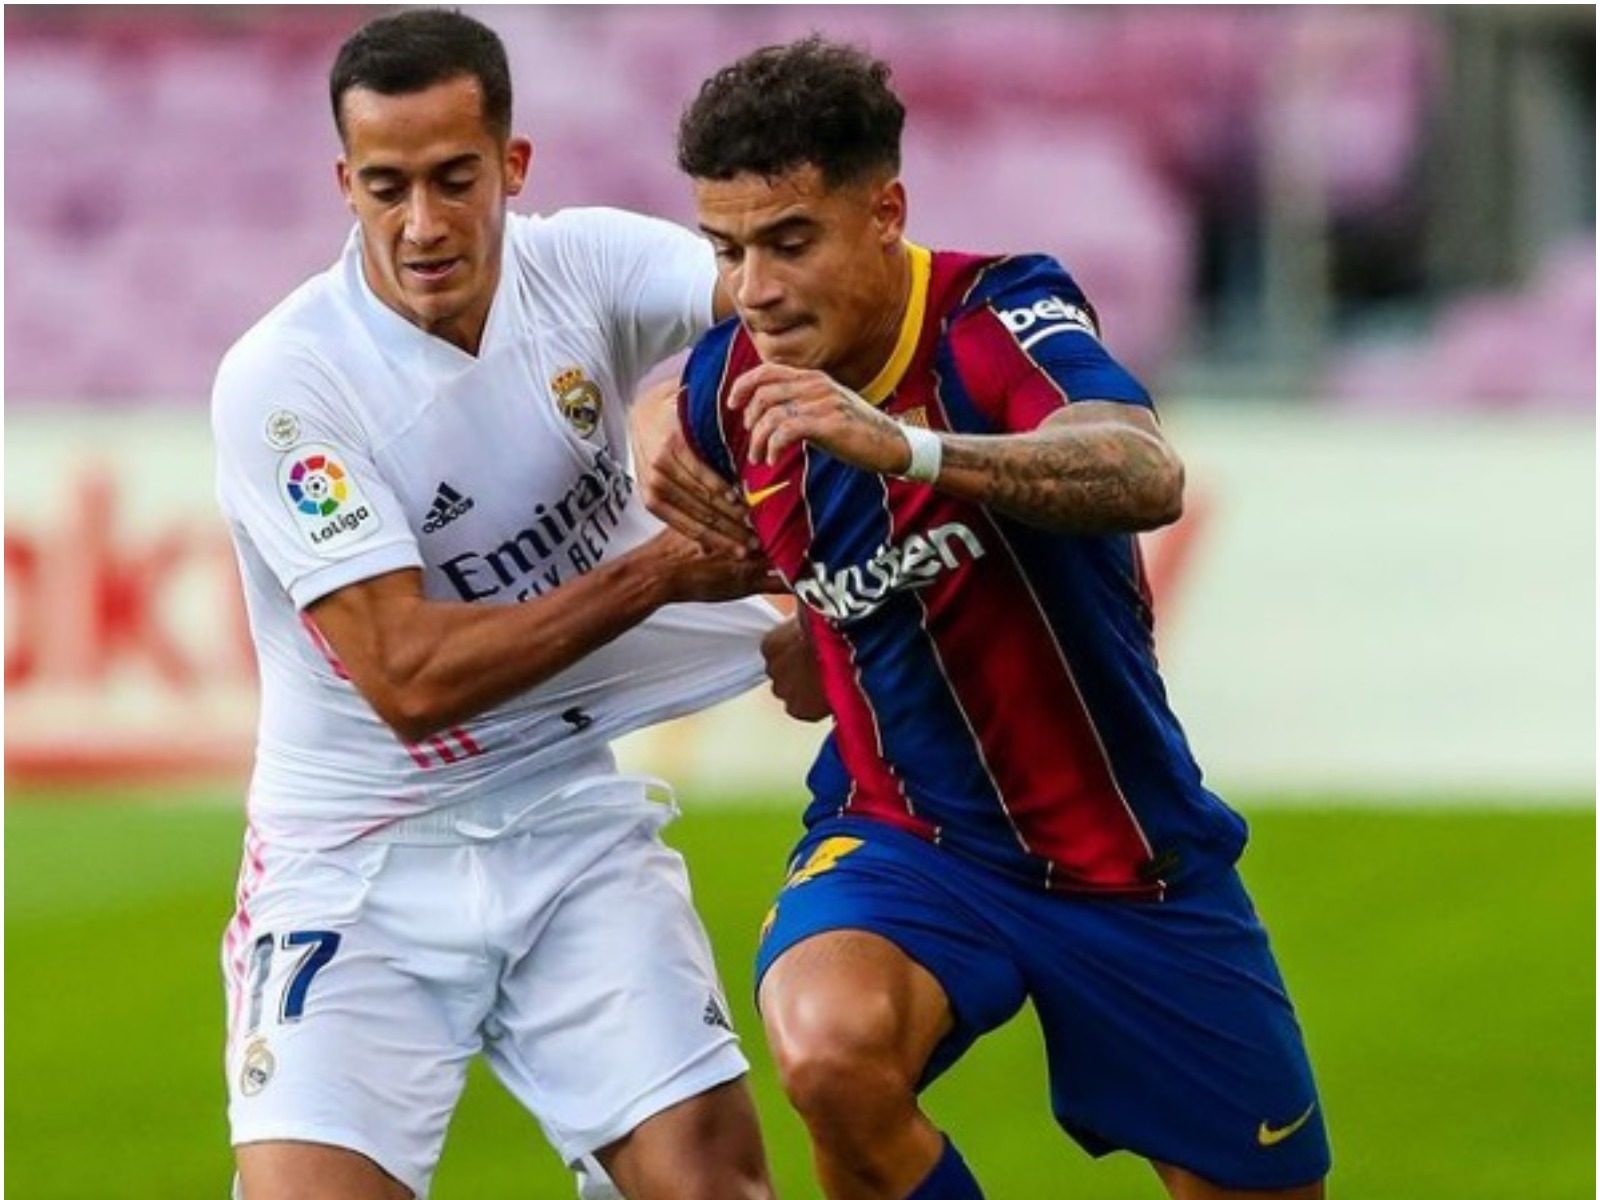 बार्सिलोना (Barcelona) का स्पेनिश फुटबॉल लीग ला लिगा (La Liga) में संघर्ष जारी है और उसे लगातार दूसरे मैच में ड्रॉ खेलने के कारण अंक बांटने पड़े. (FC Barcelona Instagram)